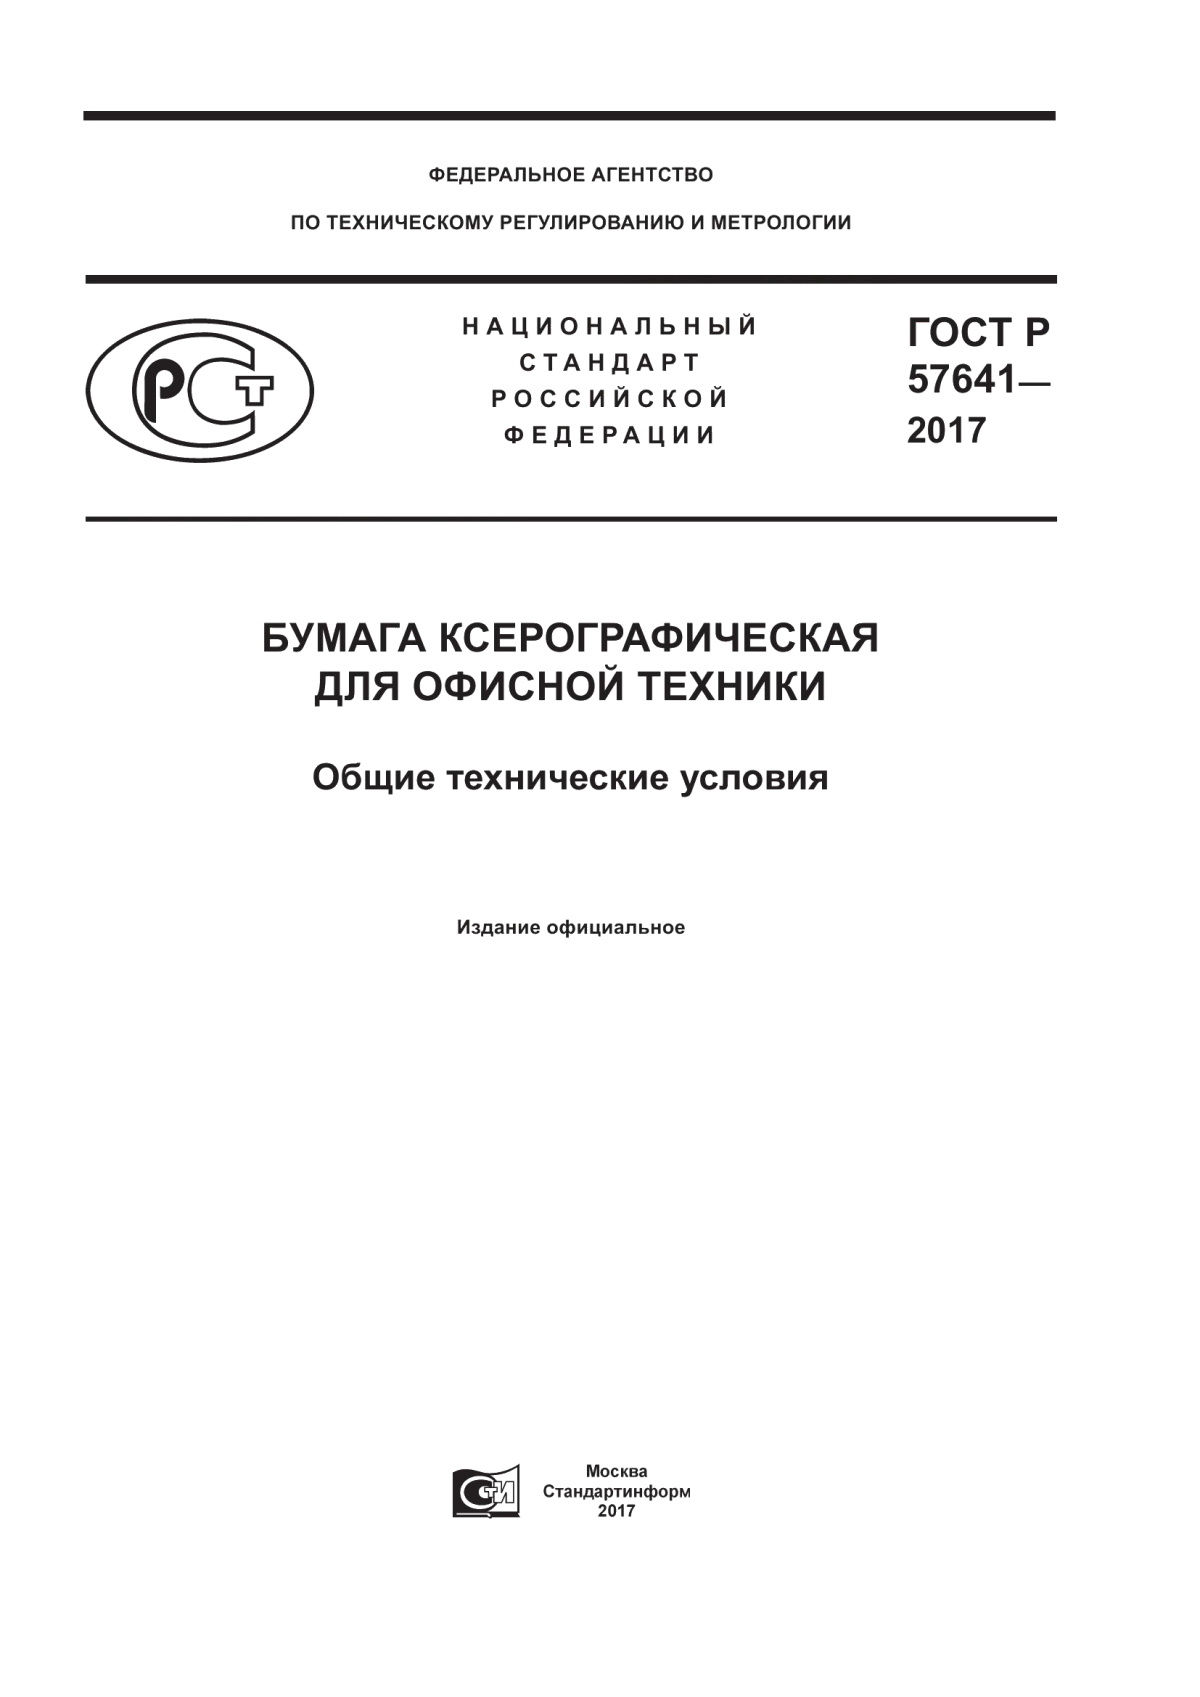 ГОСТ Р 57641-2017 Бумага ксерографическая для офисной техники. Общие технические условия